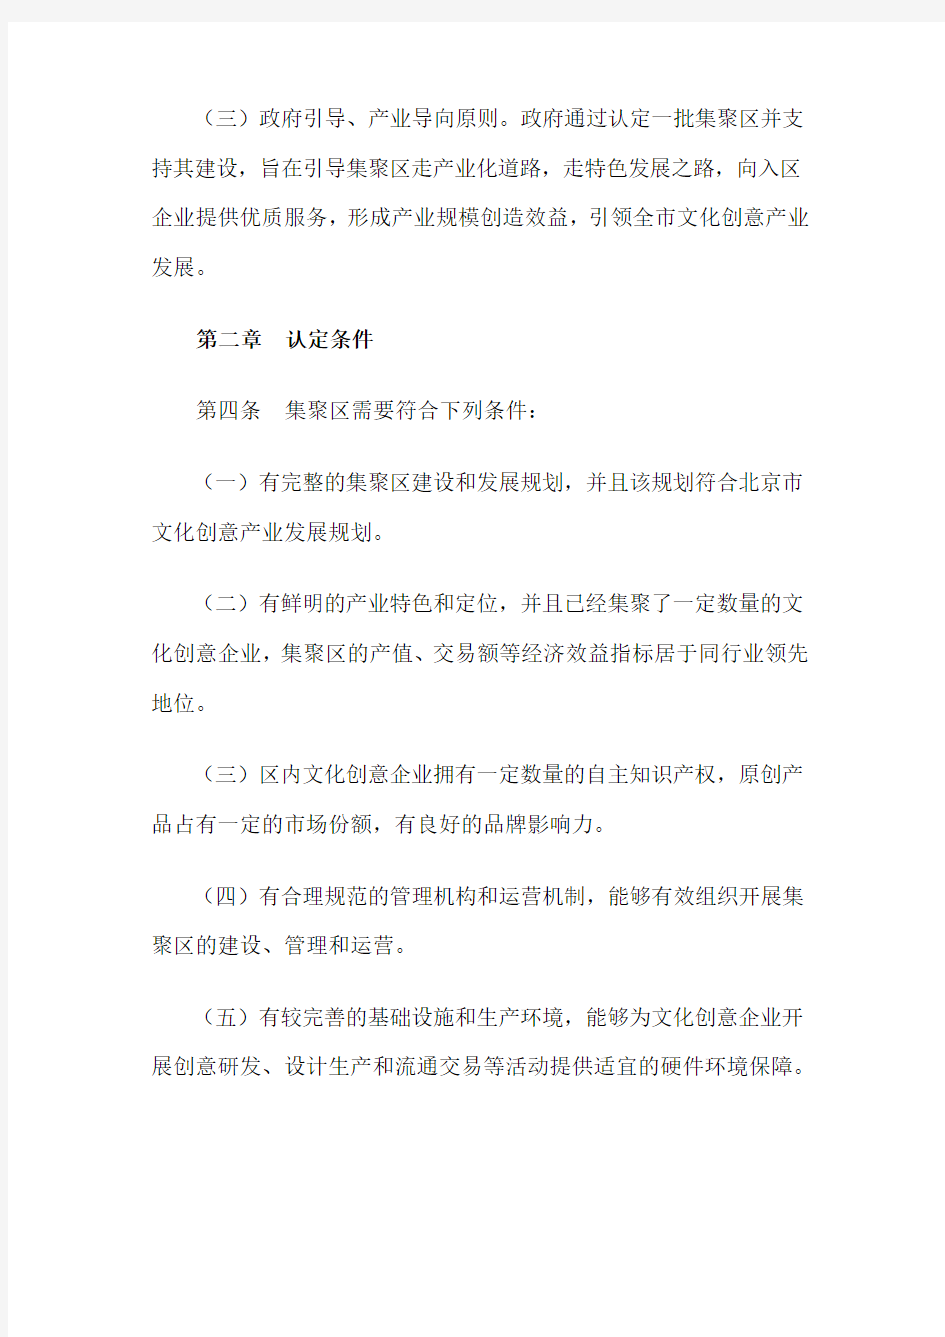 北京市文化创意产业集聚区认定和管理办法(试行)